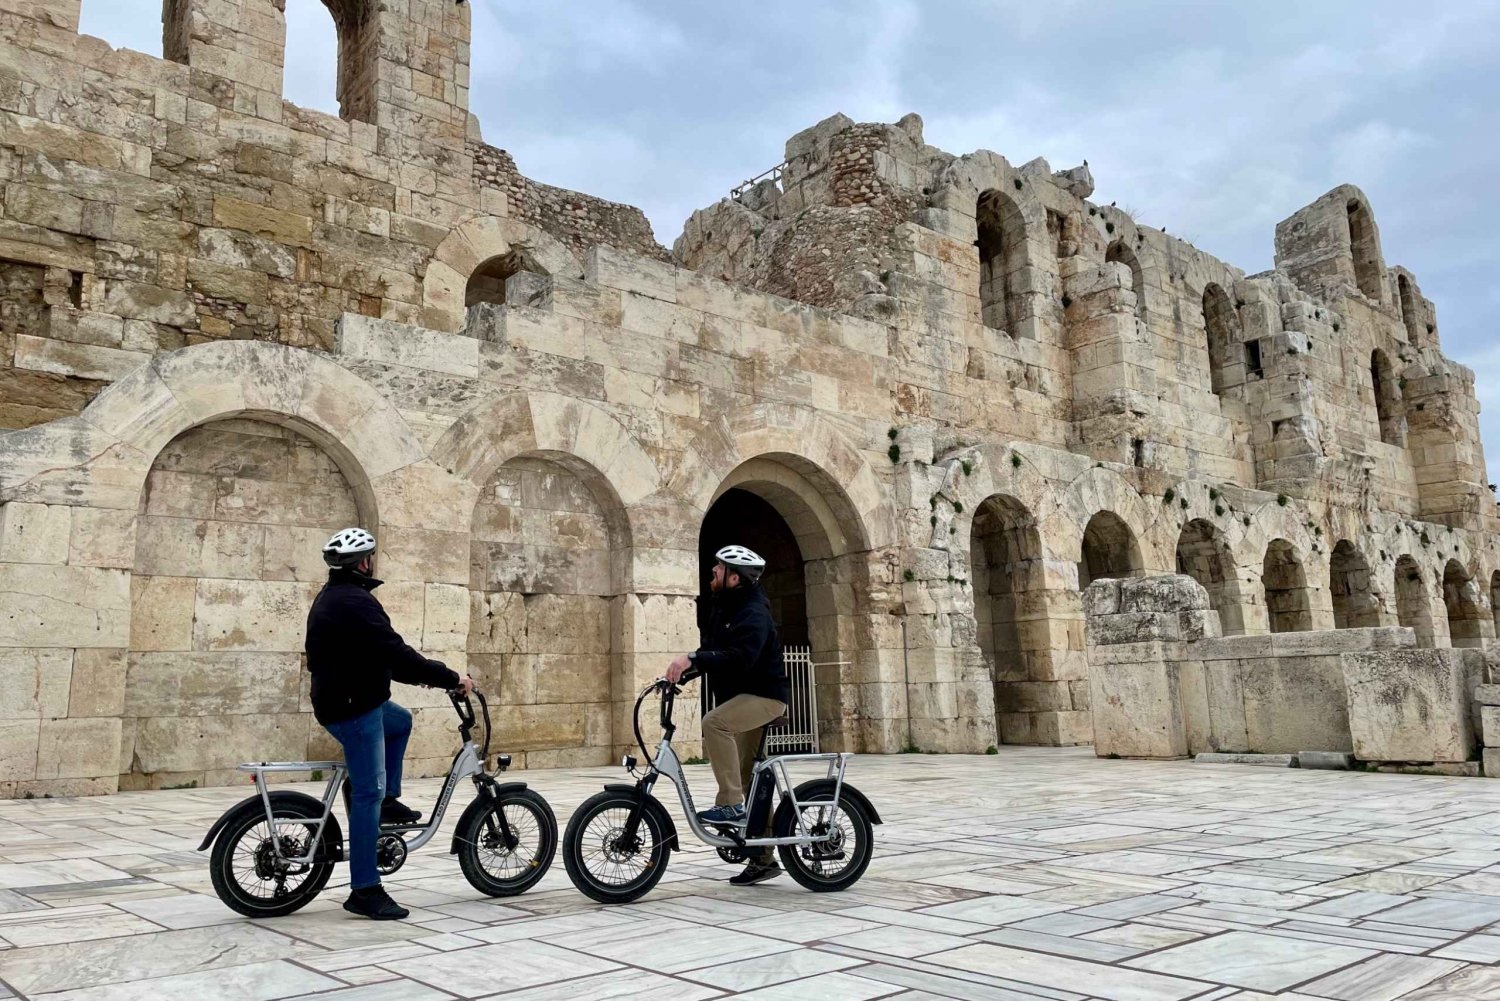 Athen: Reisen in der Zeit Geführte Kleingruppen-E-Bike-Tour